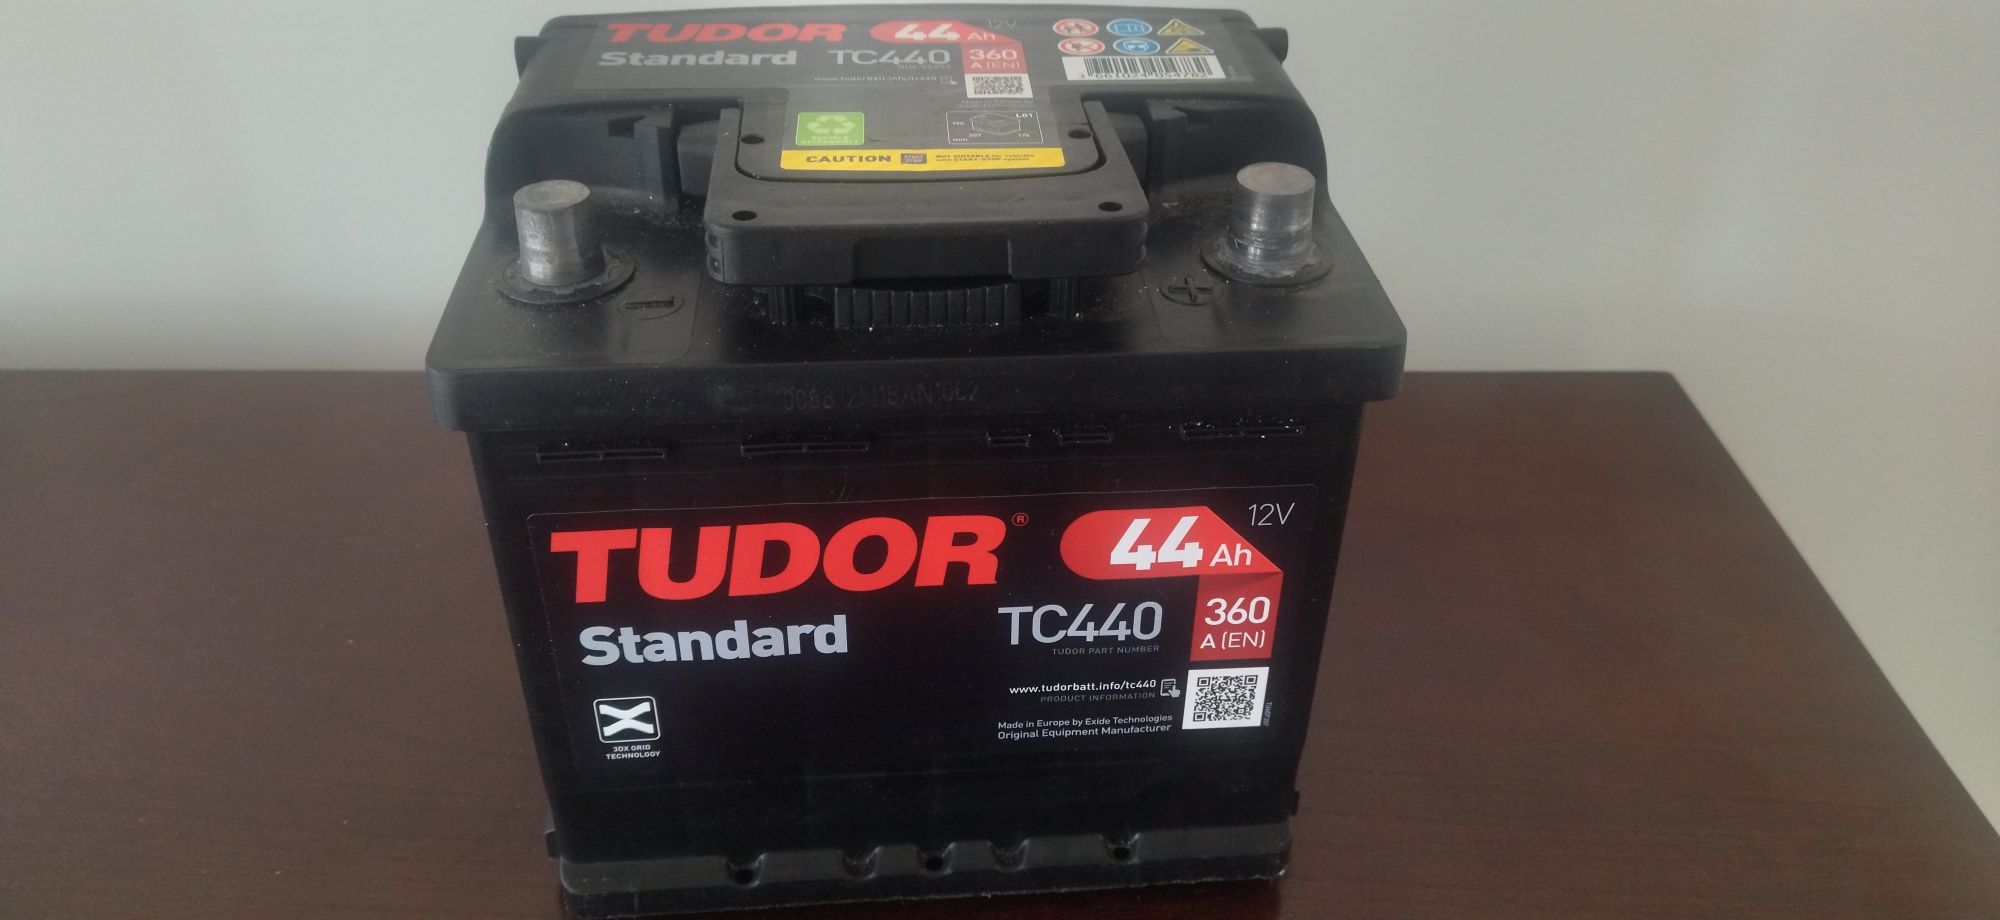 Bateria Tudor Standard TC440 44Ah 12v